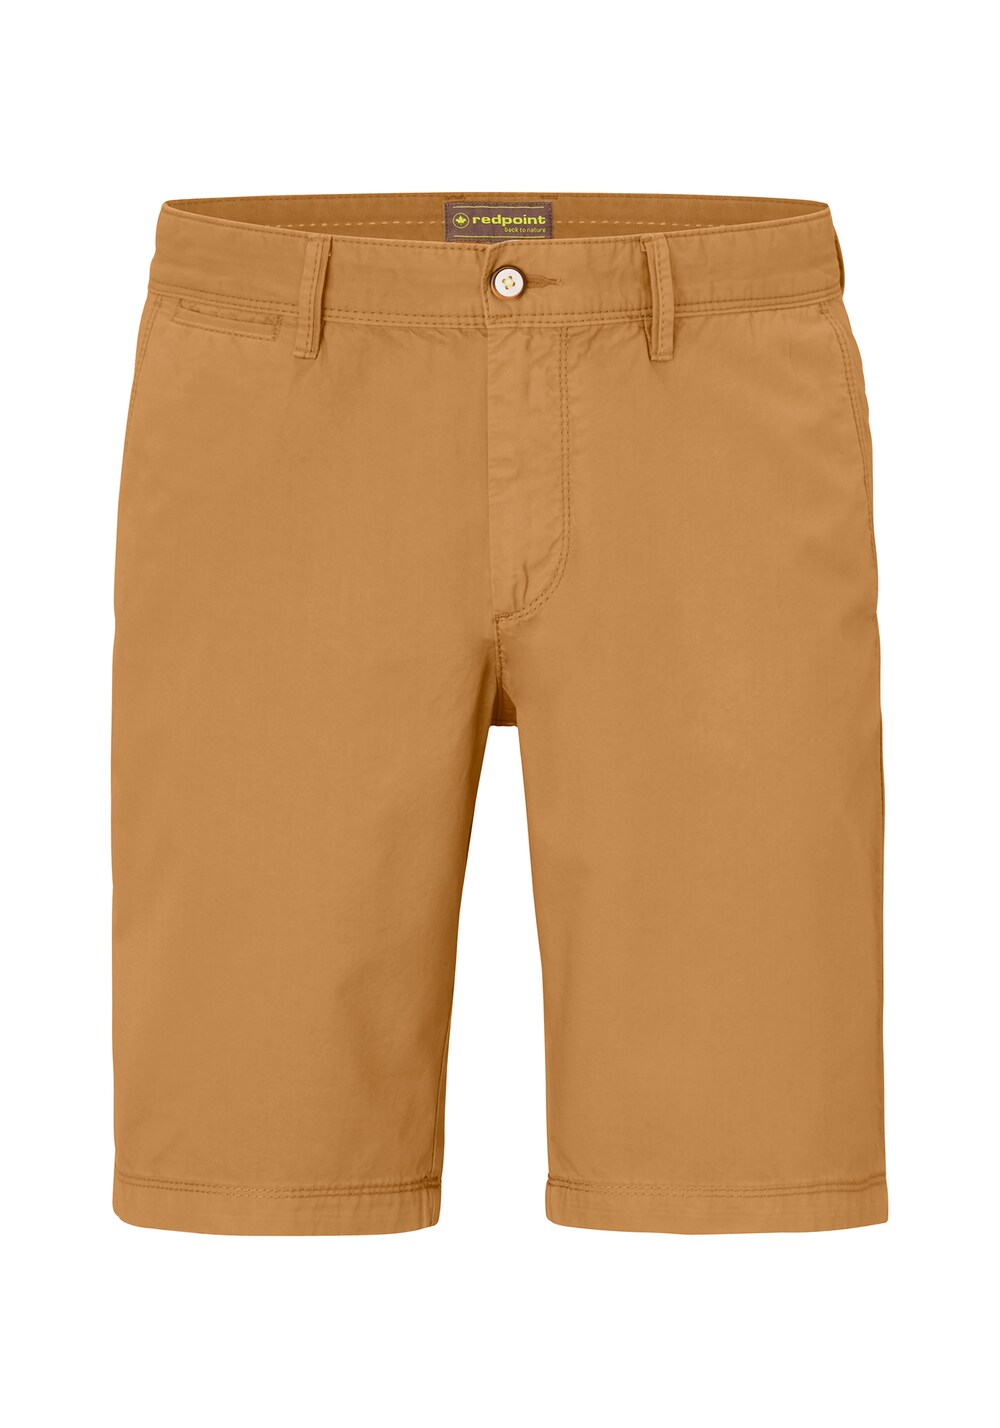 Обычные брюки чинос REDPOINT, светло-коричневый